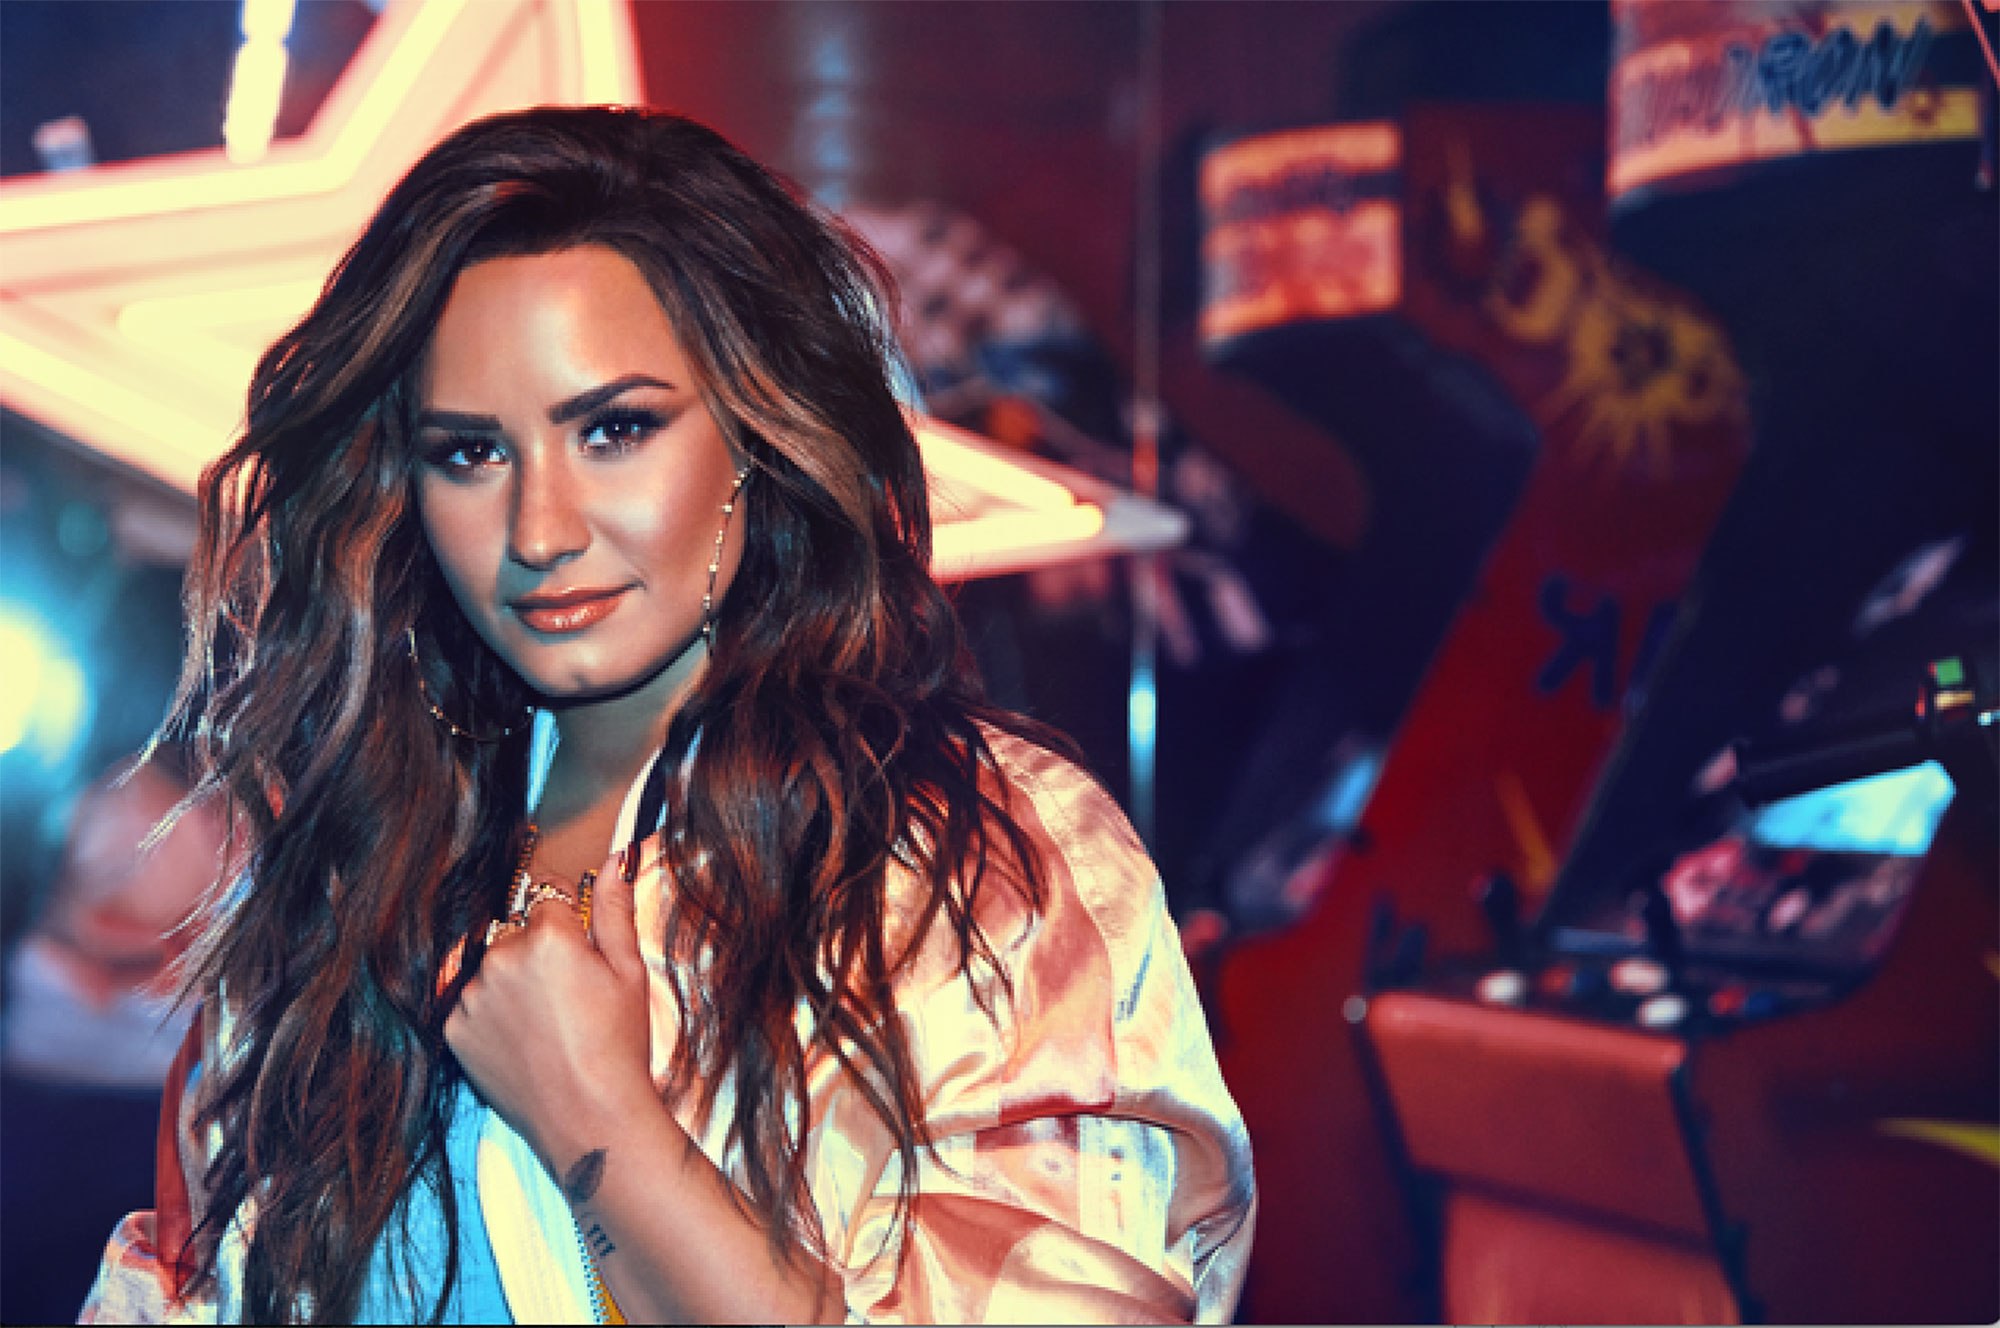 Estrelas de Hollywood dão apoio a Demi Lovato após overdose